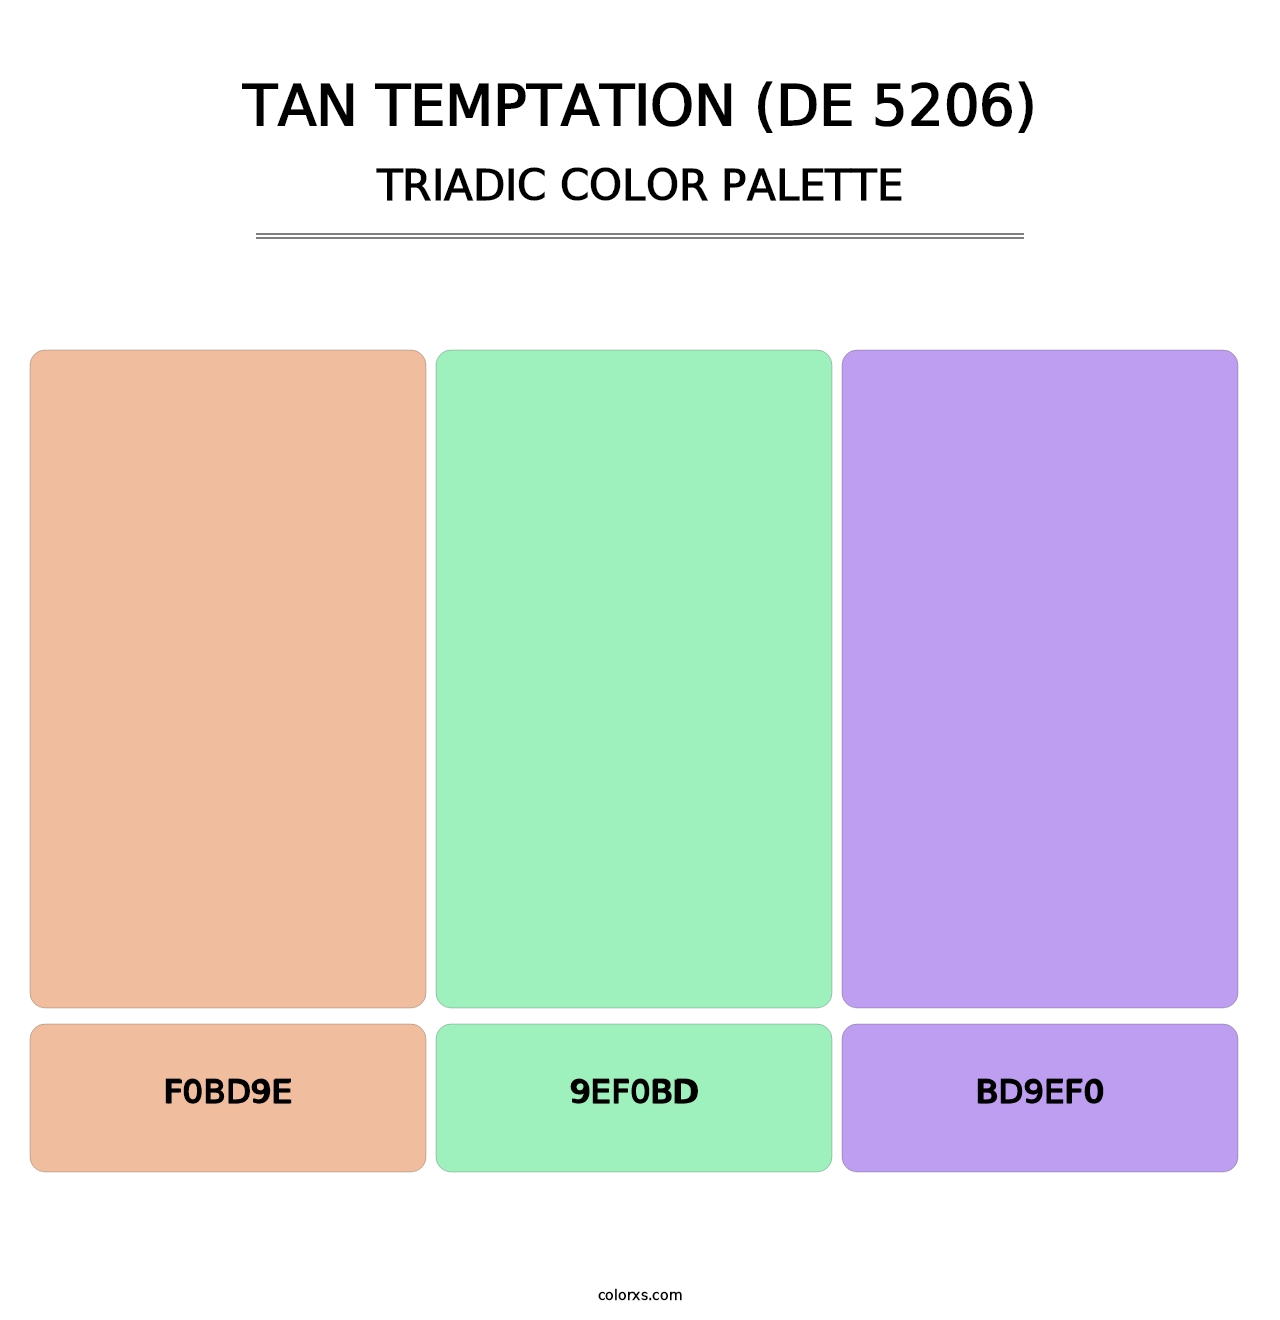 Tan Temptation (DE 5206) - Triadic Color Palette